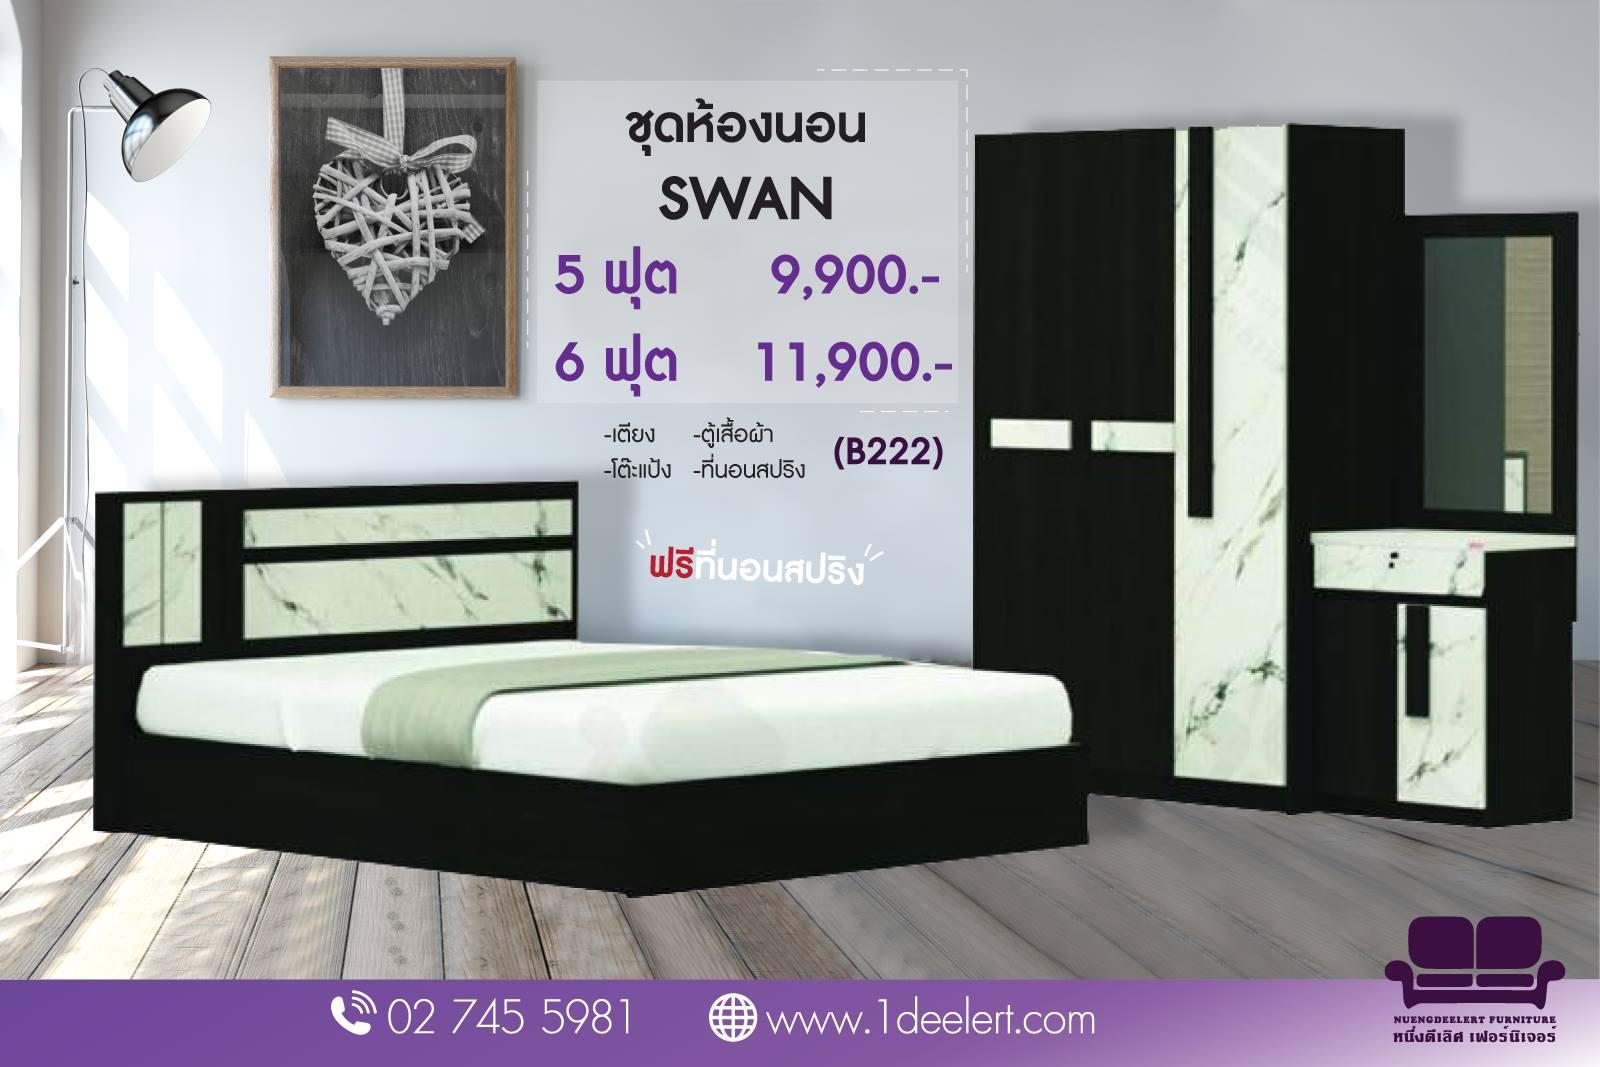 1deelert ชุดห้องนอน 5 ฟุต / 6 ฟุต รุ่น SWAN (เตียง+ตู้เสื้อผ้า+โต๊ะแป้ง) ฟรีที่นอนสปริง - เลือกสีได้